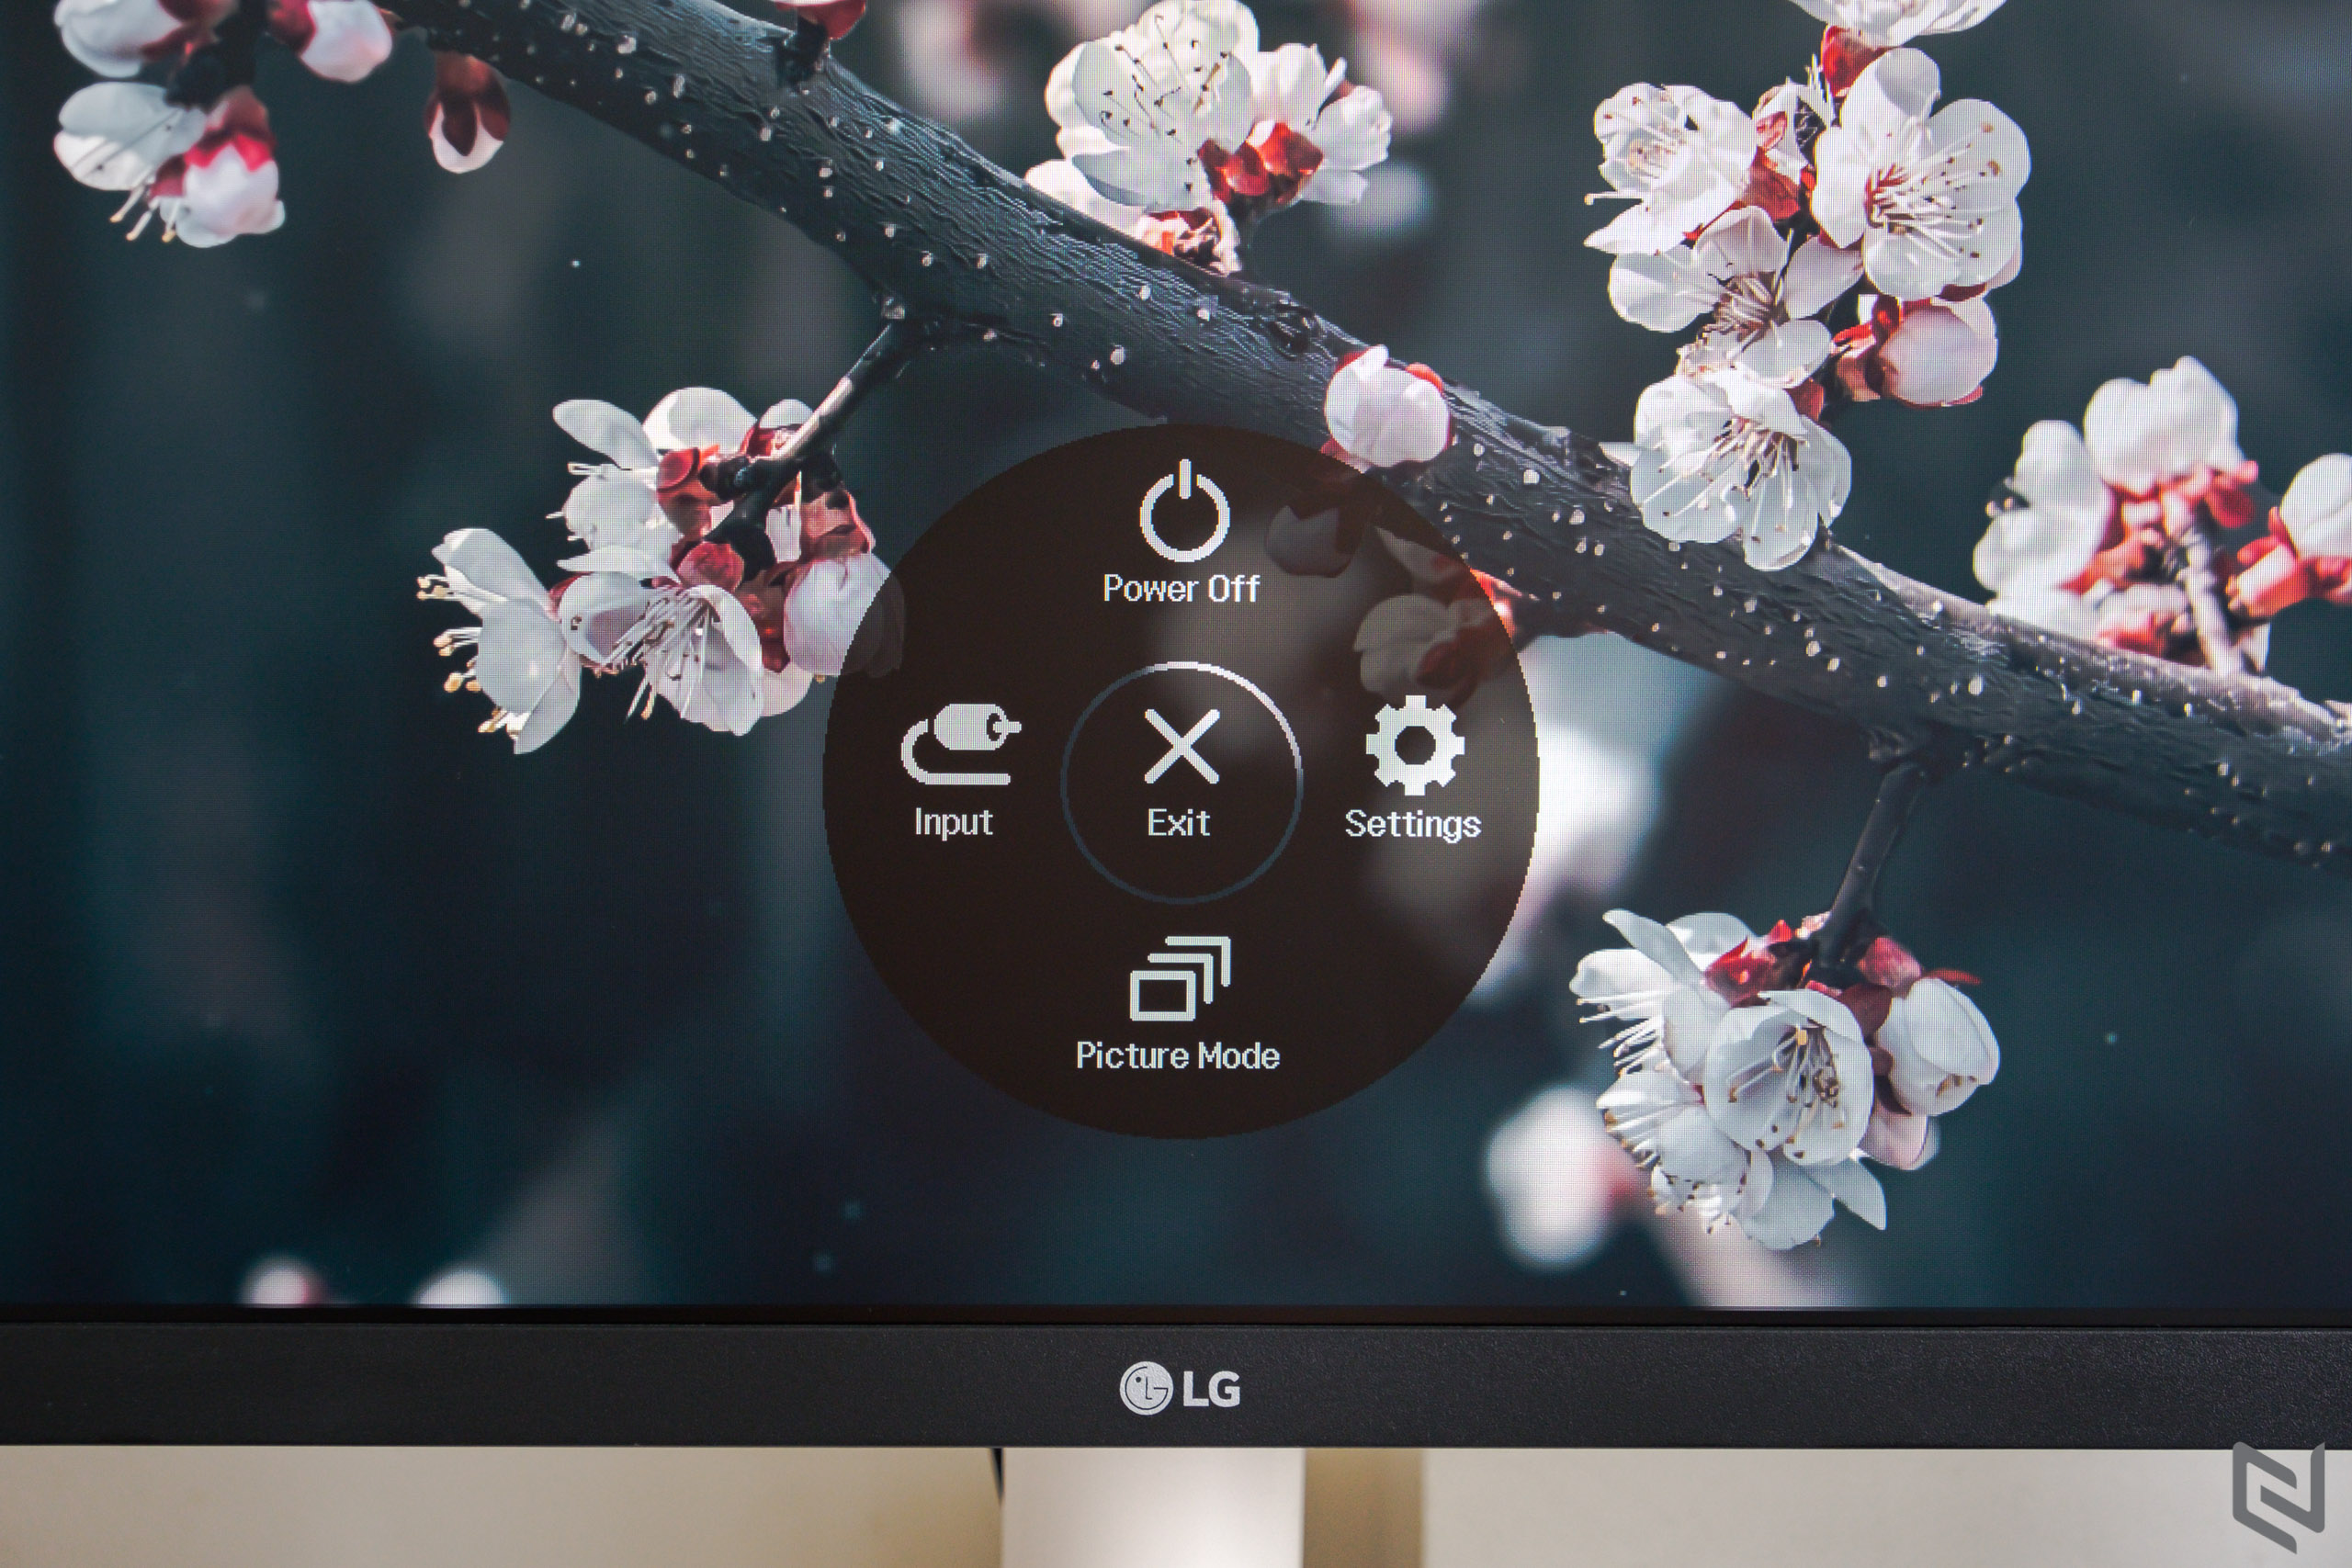 Đánh giá màn hình LG 27MP500: Lựa chọn phù hợp cho công việc và giải trí với các công nghệ an toàn cho mắt